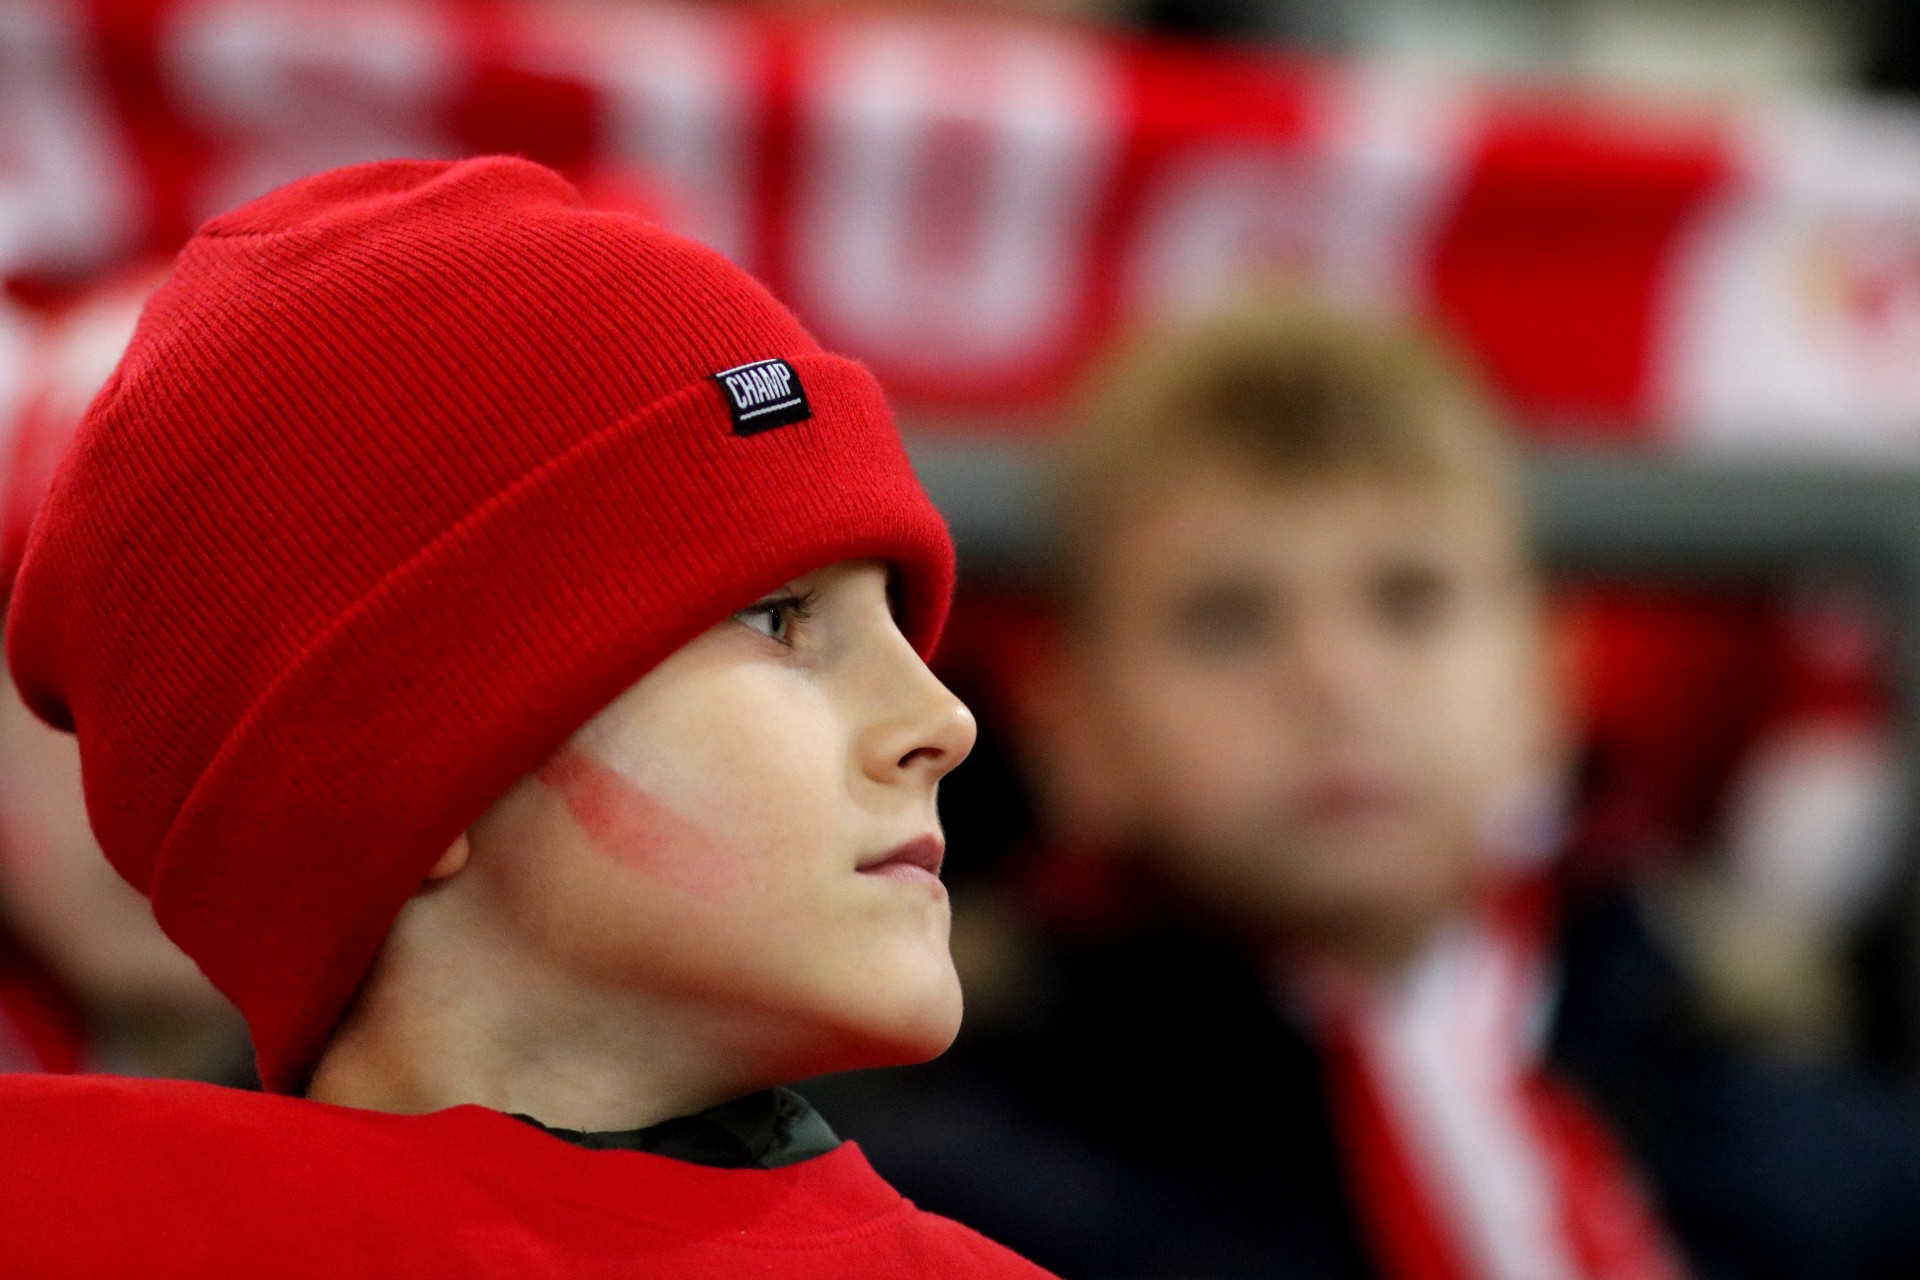 Twarz chłopca w czerwonej czapce i z namalowanymi na policzkach biało-czerwonymi paskami.